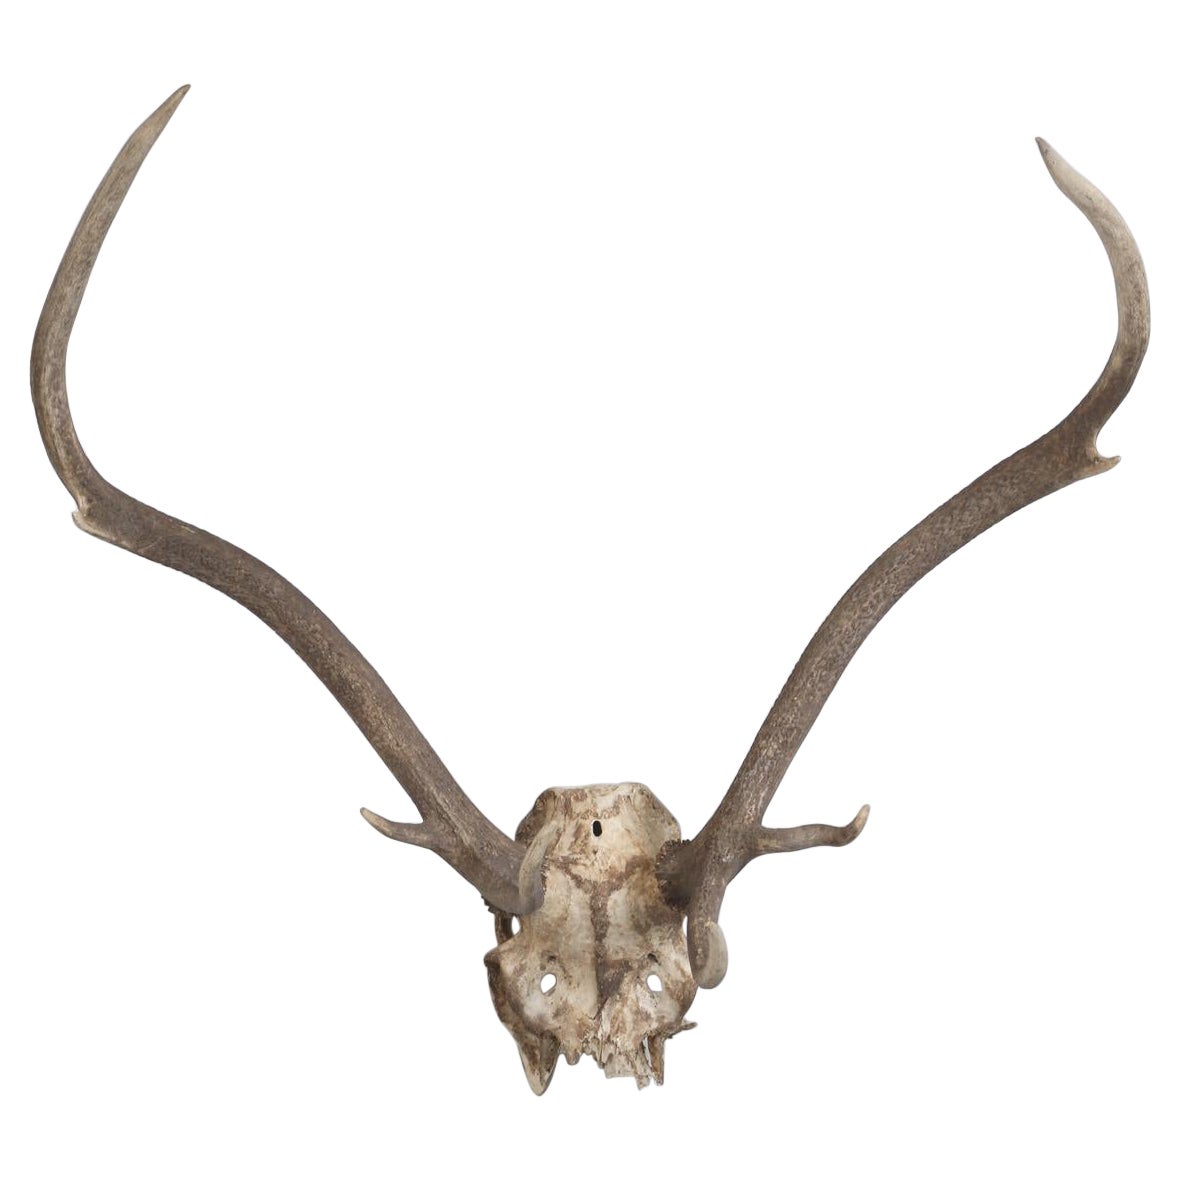 Deer Antler Mount from France